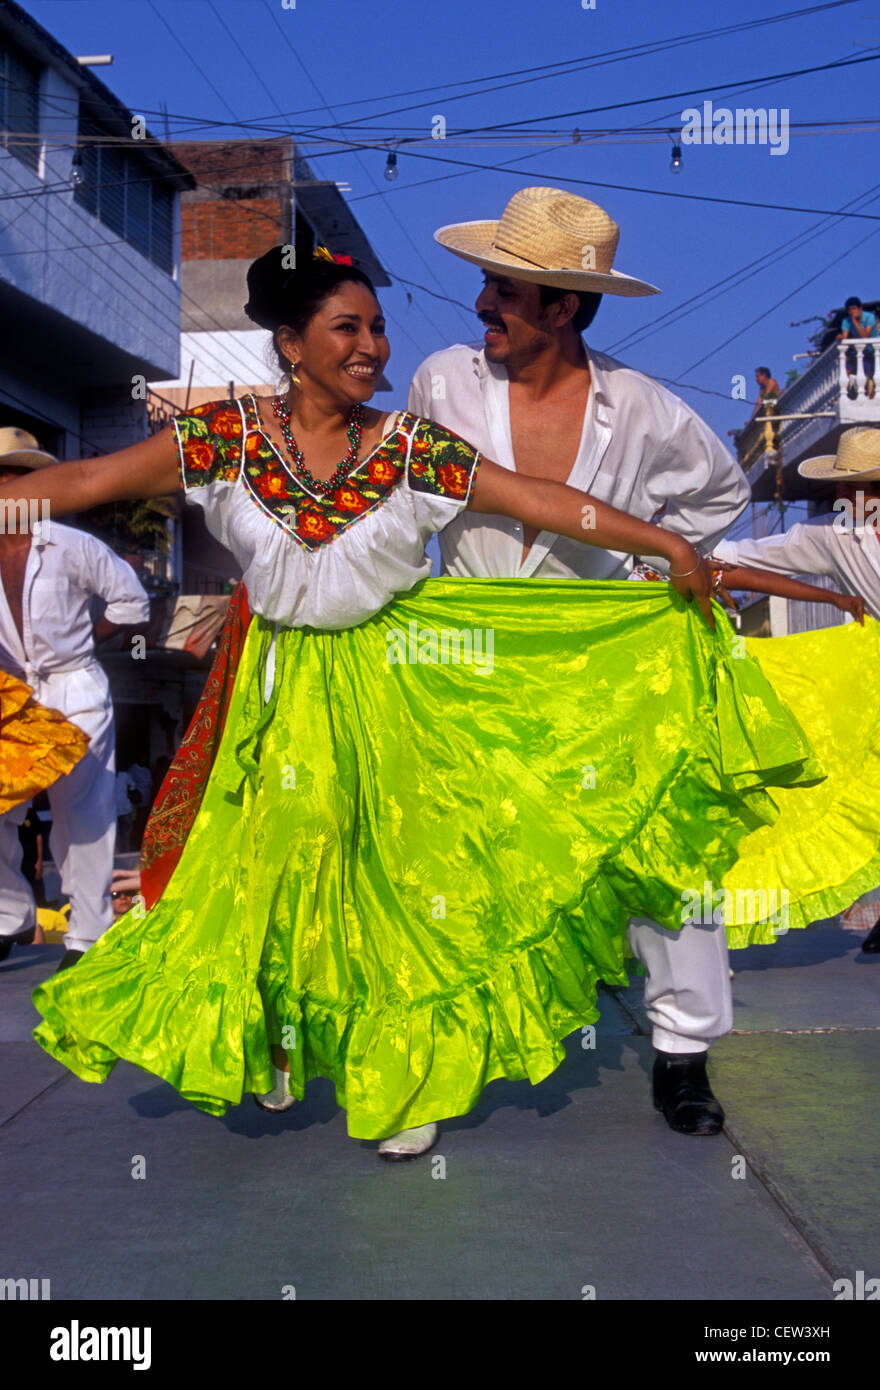 Donna messicana, donna, messicano, uomo, giovane, ballerina, ballerini,  dancing, costume ballerini, città di Acapulco Acapulco, Guerrero membro,  Messico Foto stock - Alamy